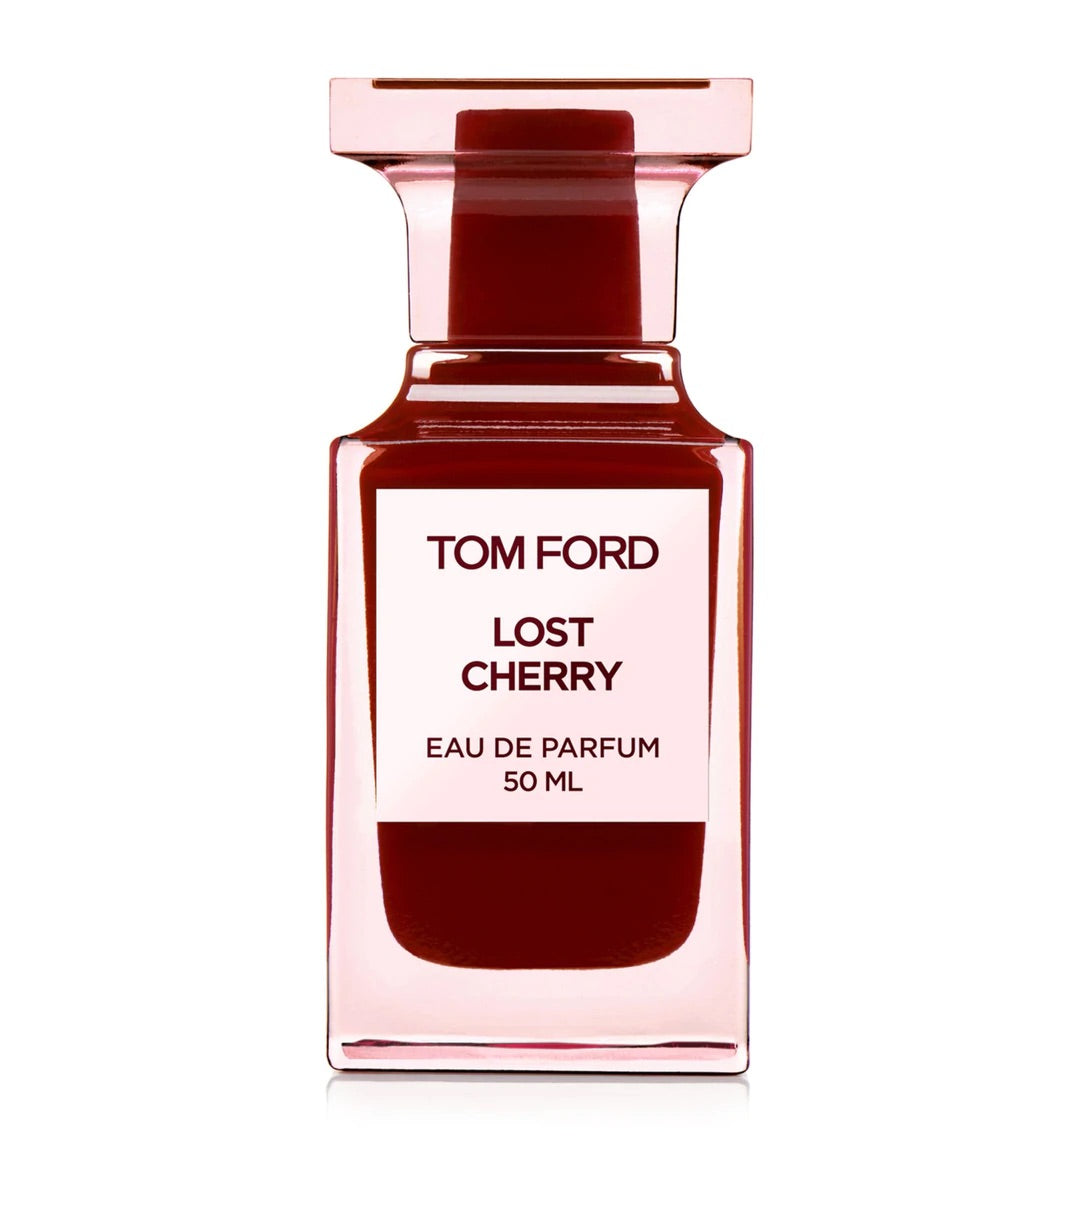 Tom Ford Lost Cherry Eau De Parfum Samples